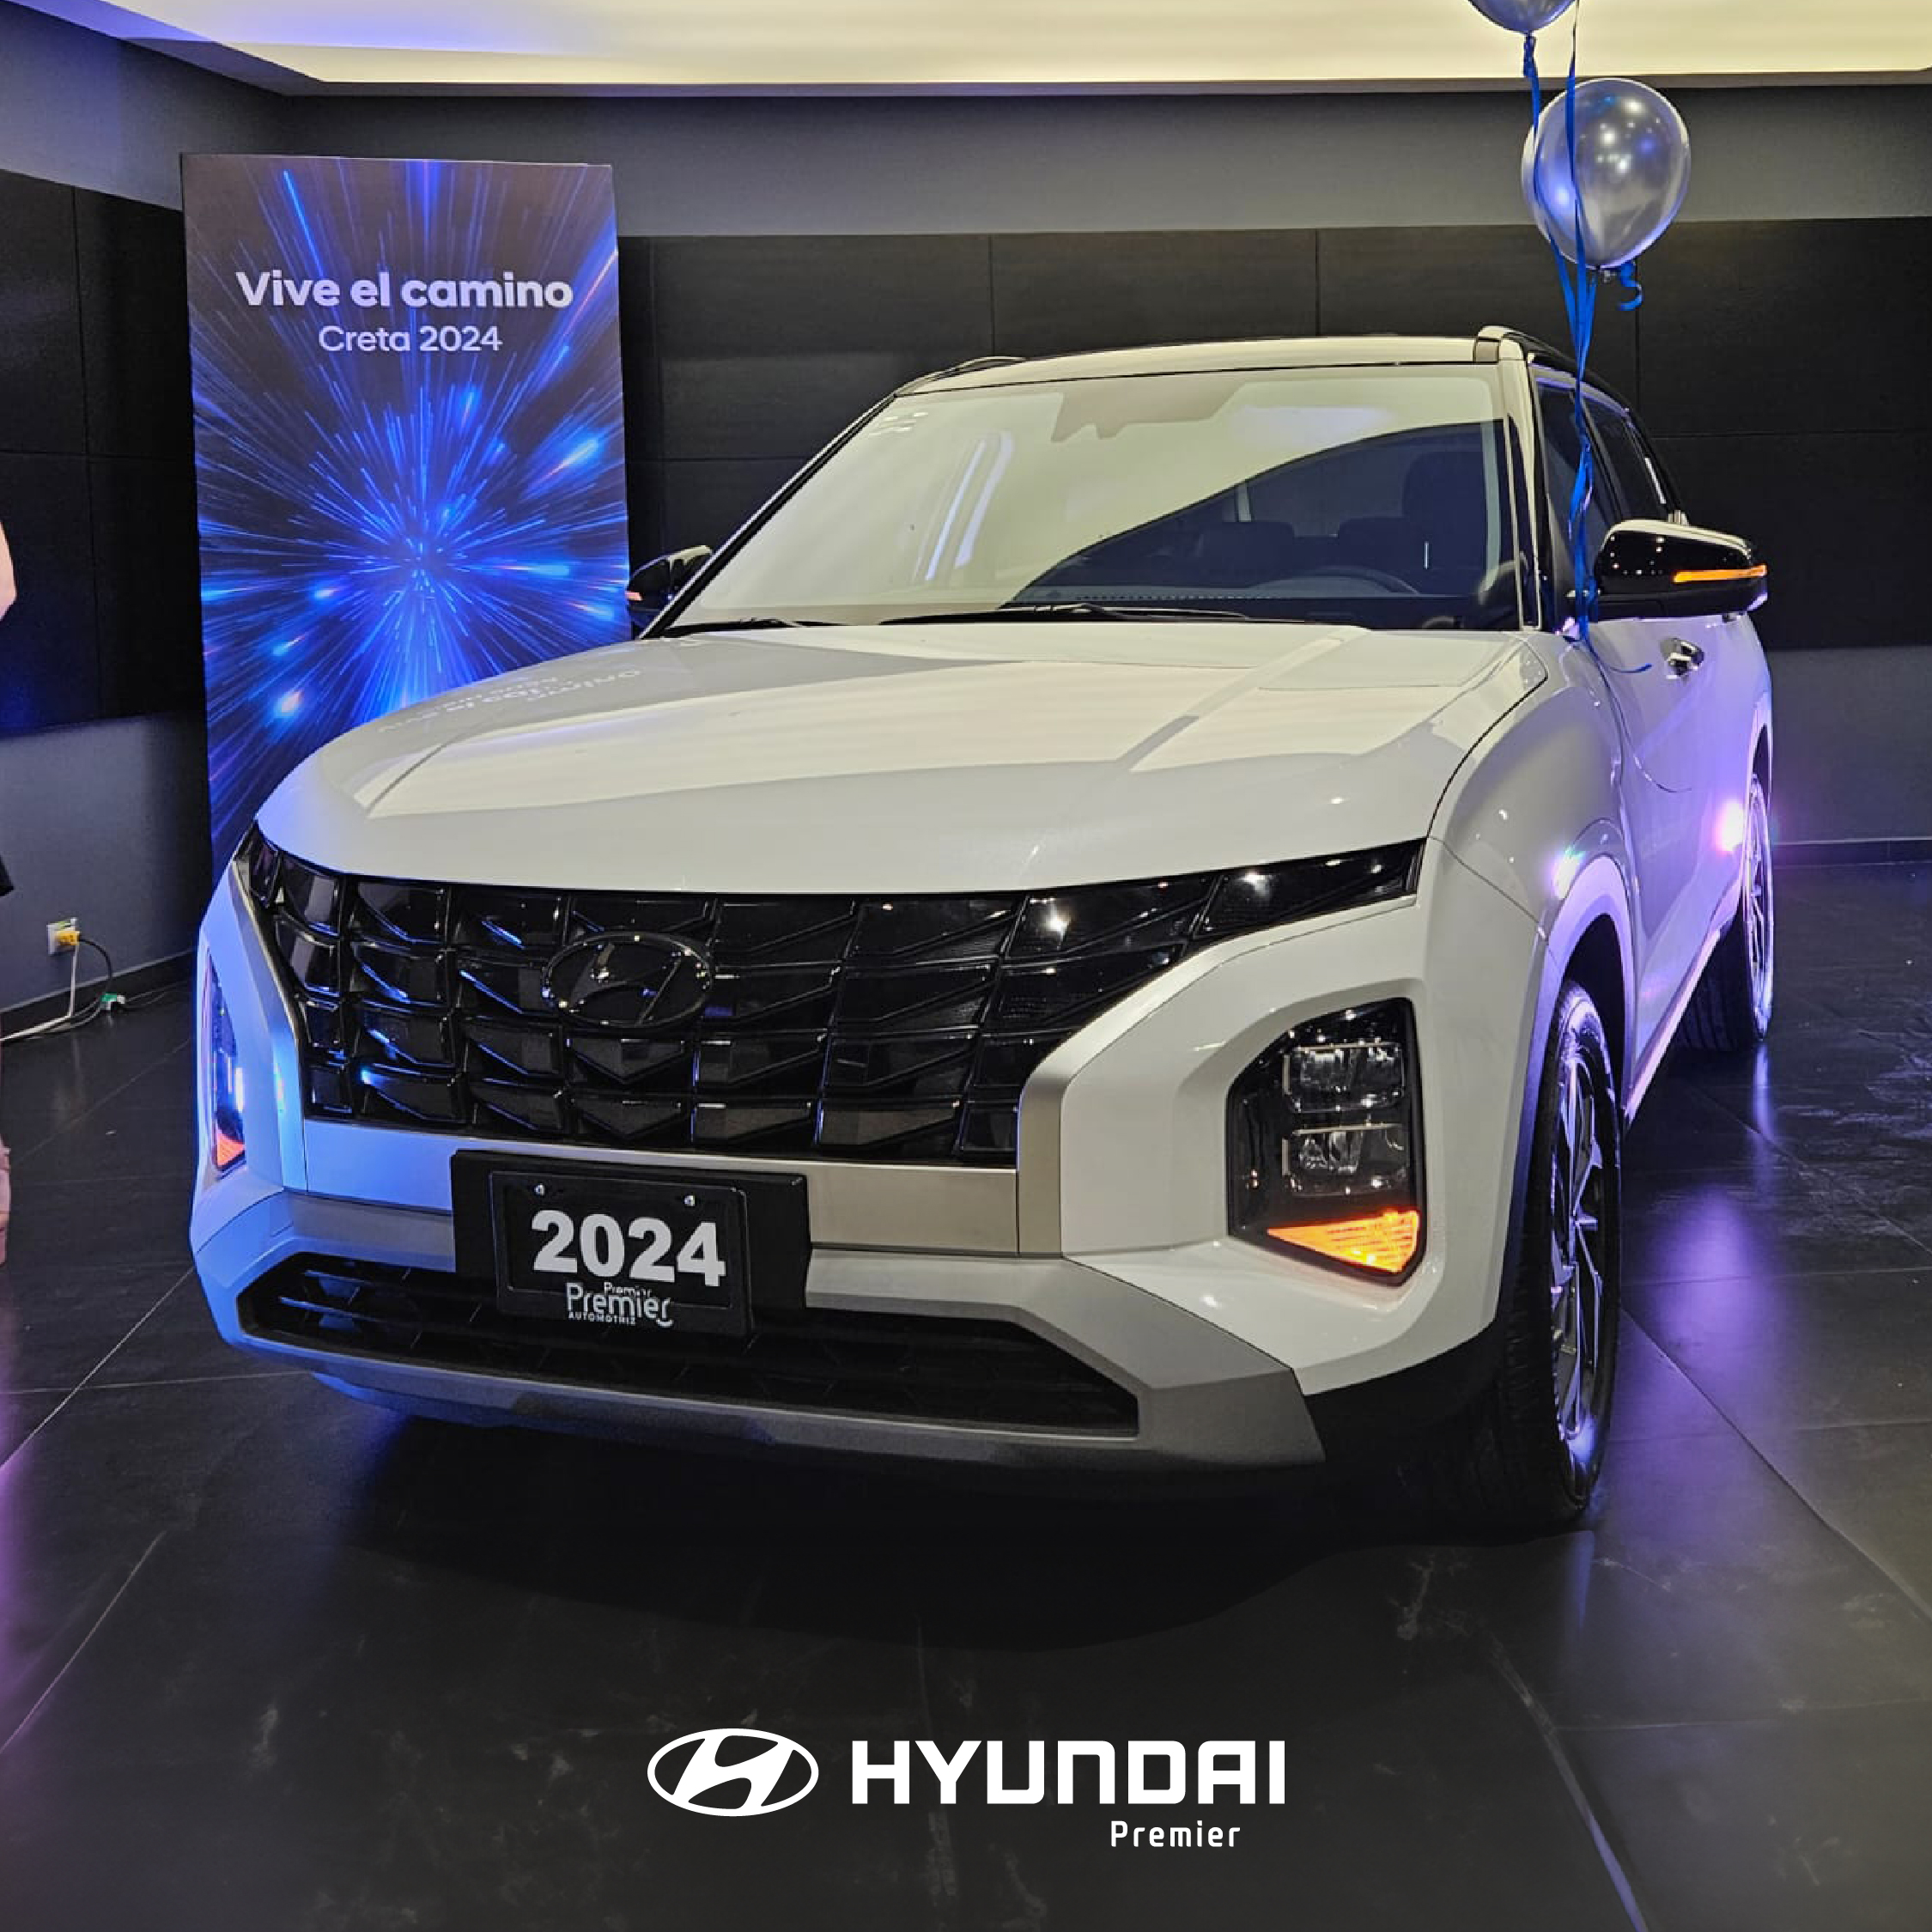 Hyundai Creta 2024 cuenta con una apariencia más fresca y moderna